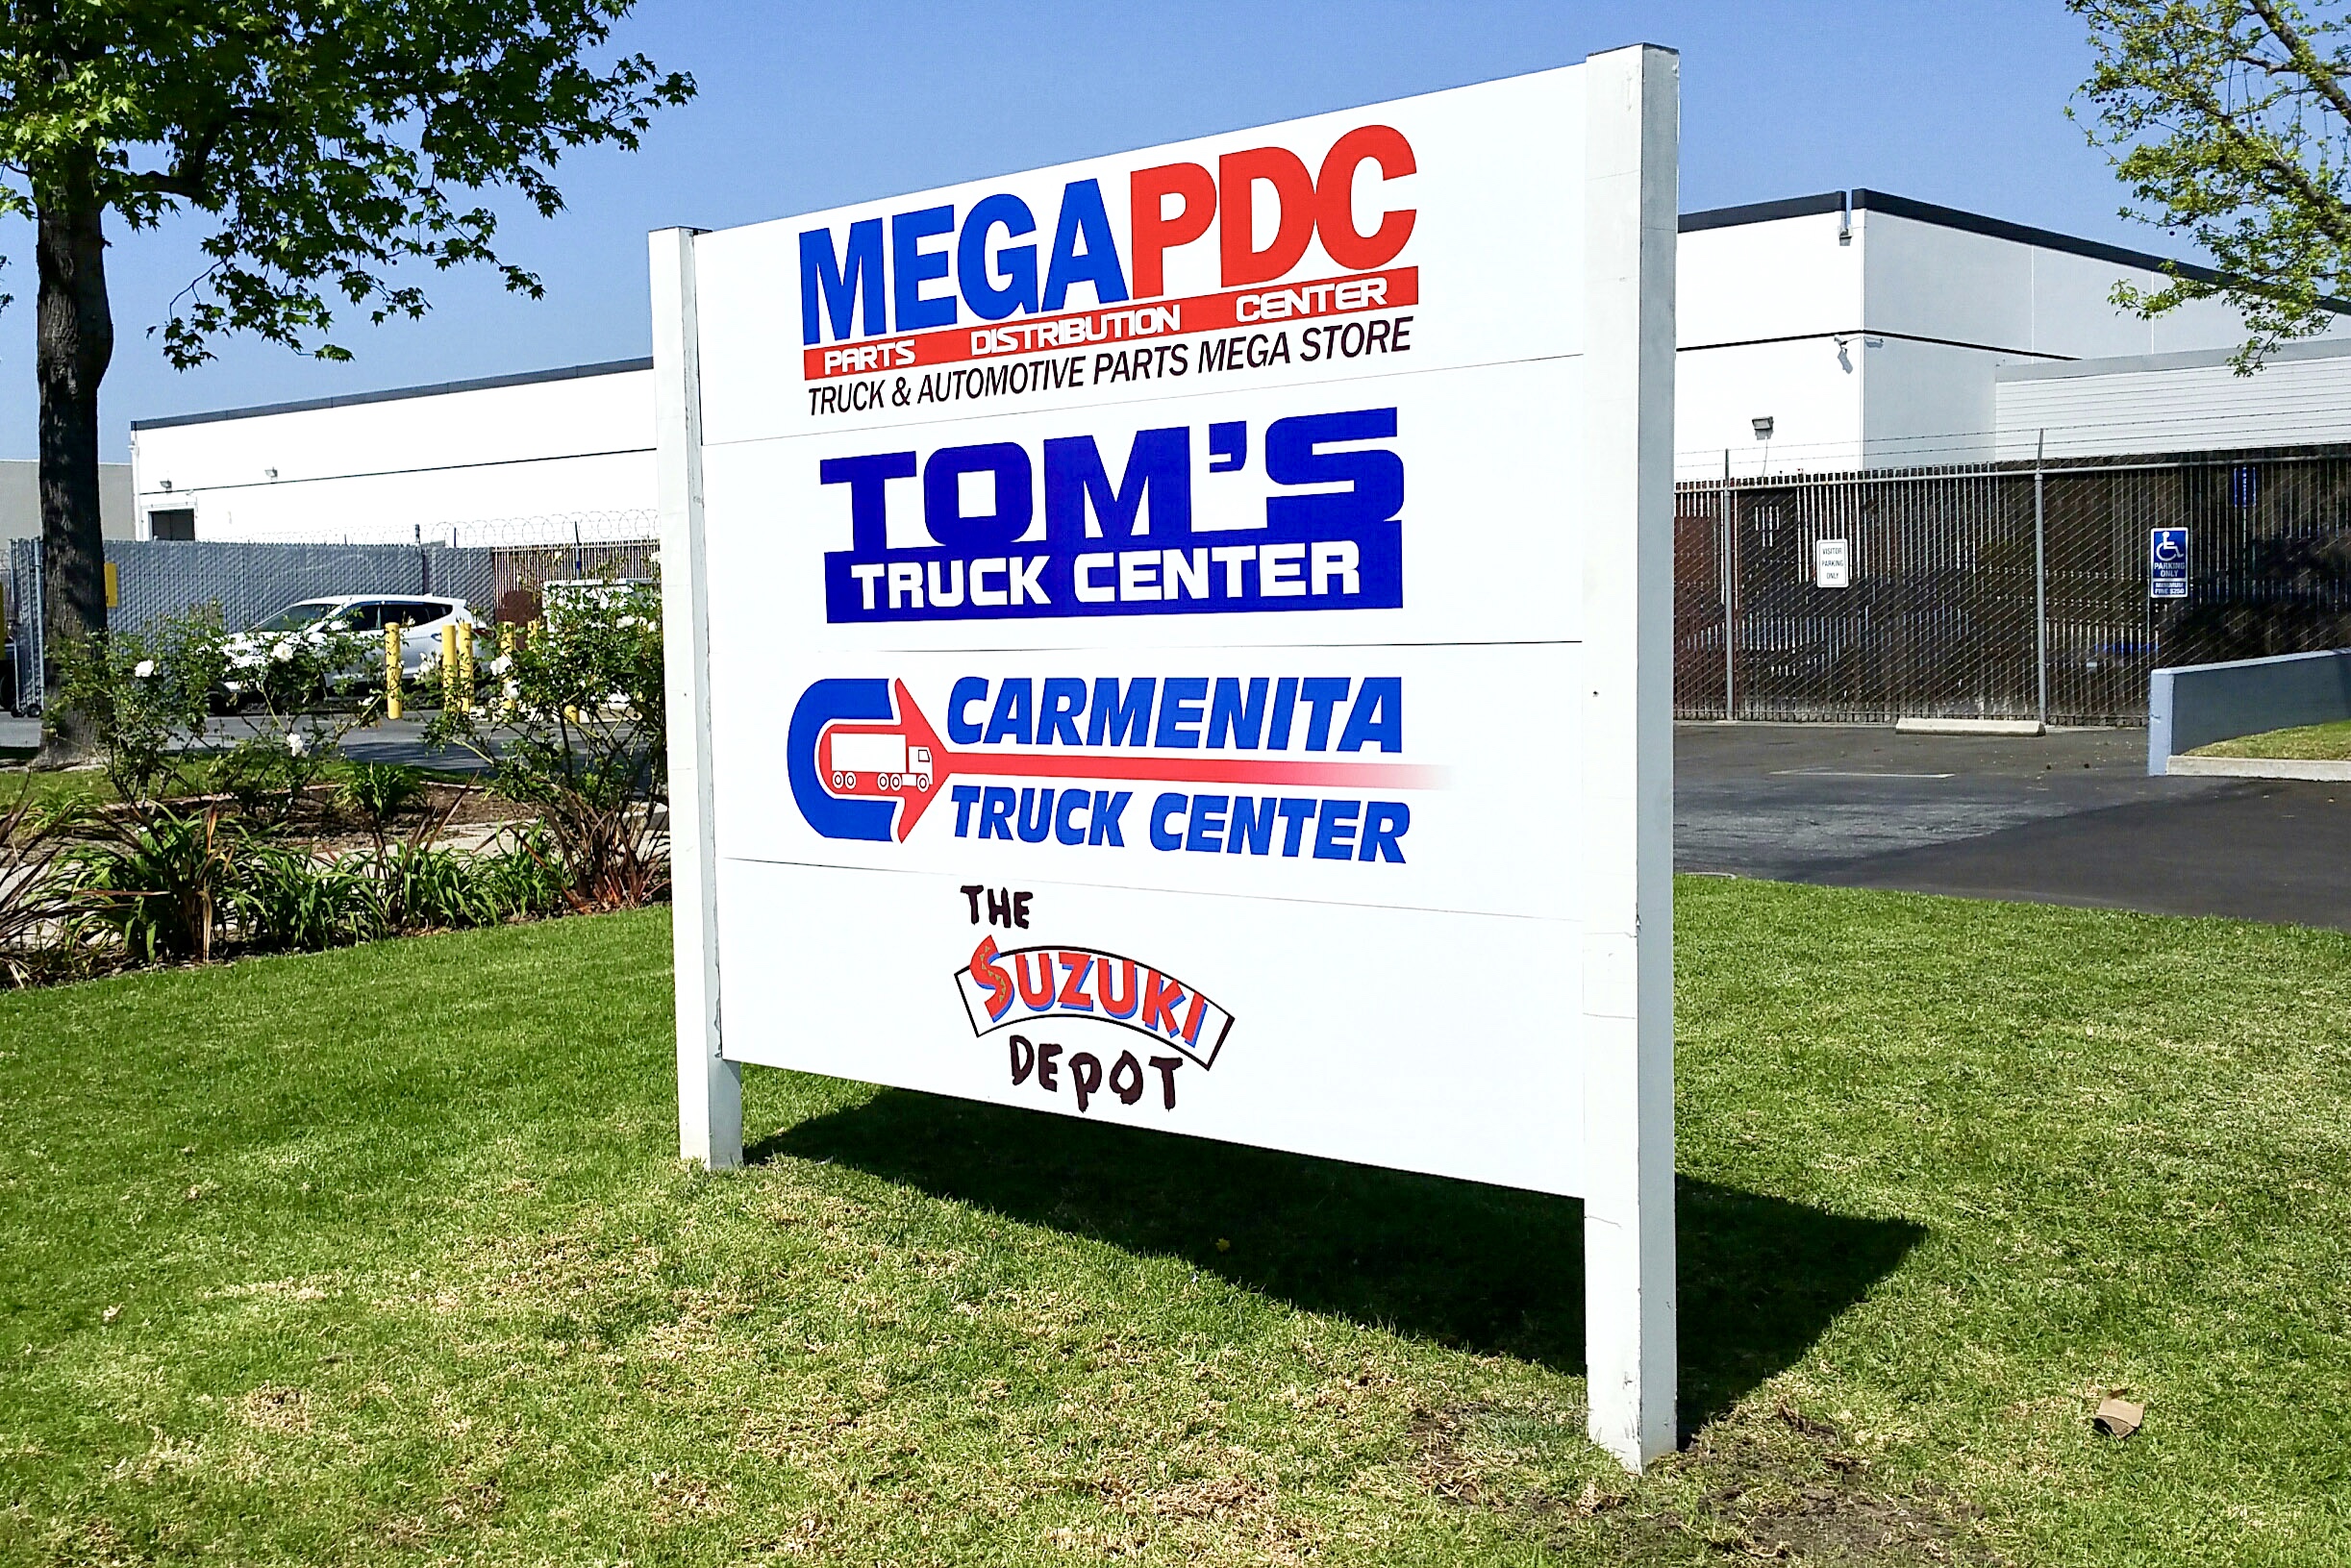 Tom's Truck Center post & panel sign